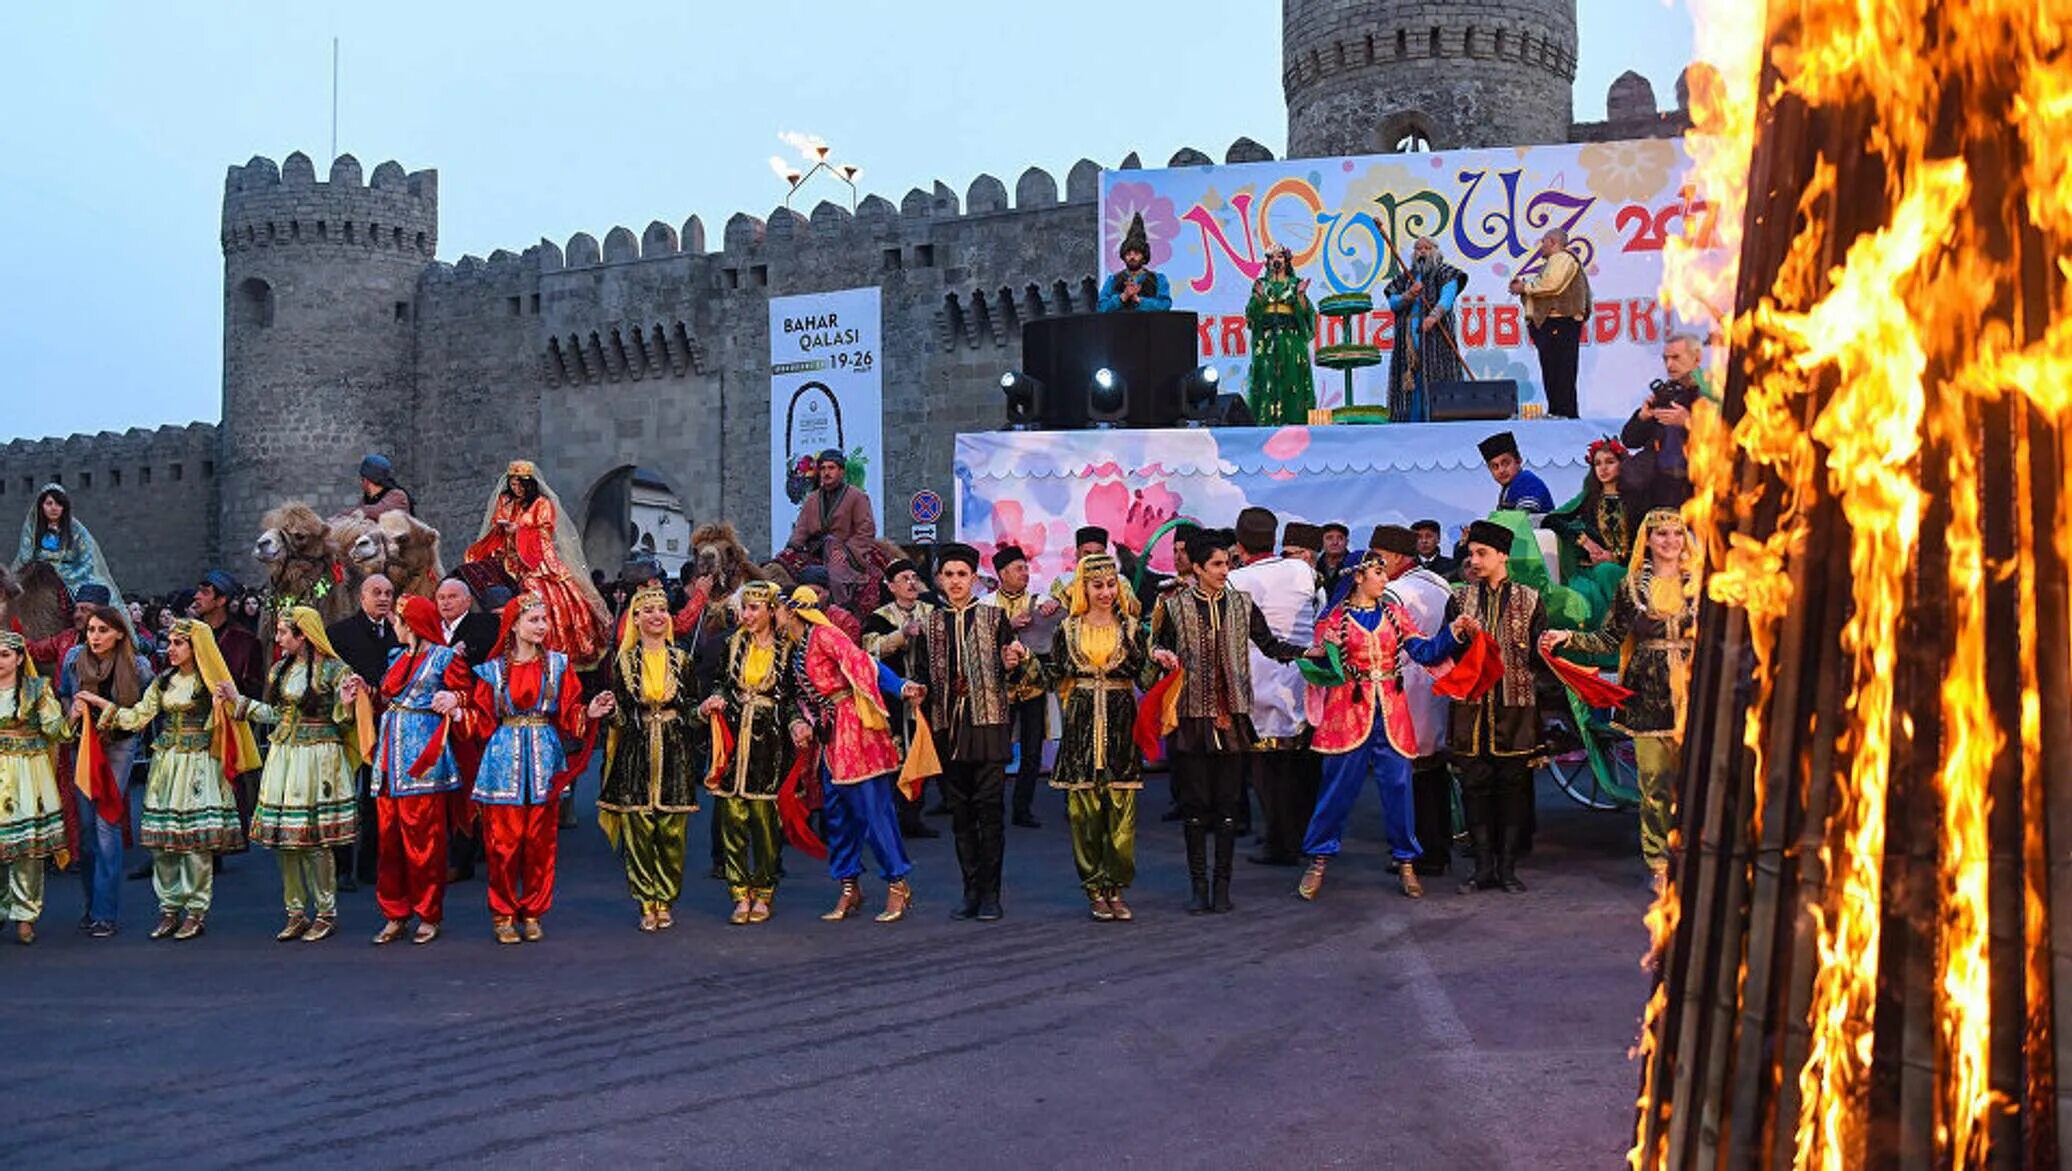 Национальный праздник азербайджанцев Новруз. Праздник Новруз в Азербайджане. Новруз байрам Азербайджан традиции. Празднование Новруза в Азербайджане. Навруз что это за праздник кто отмечает